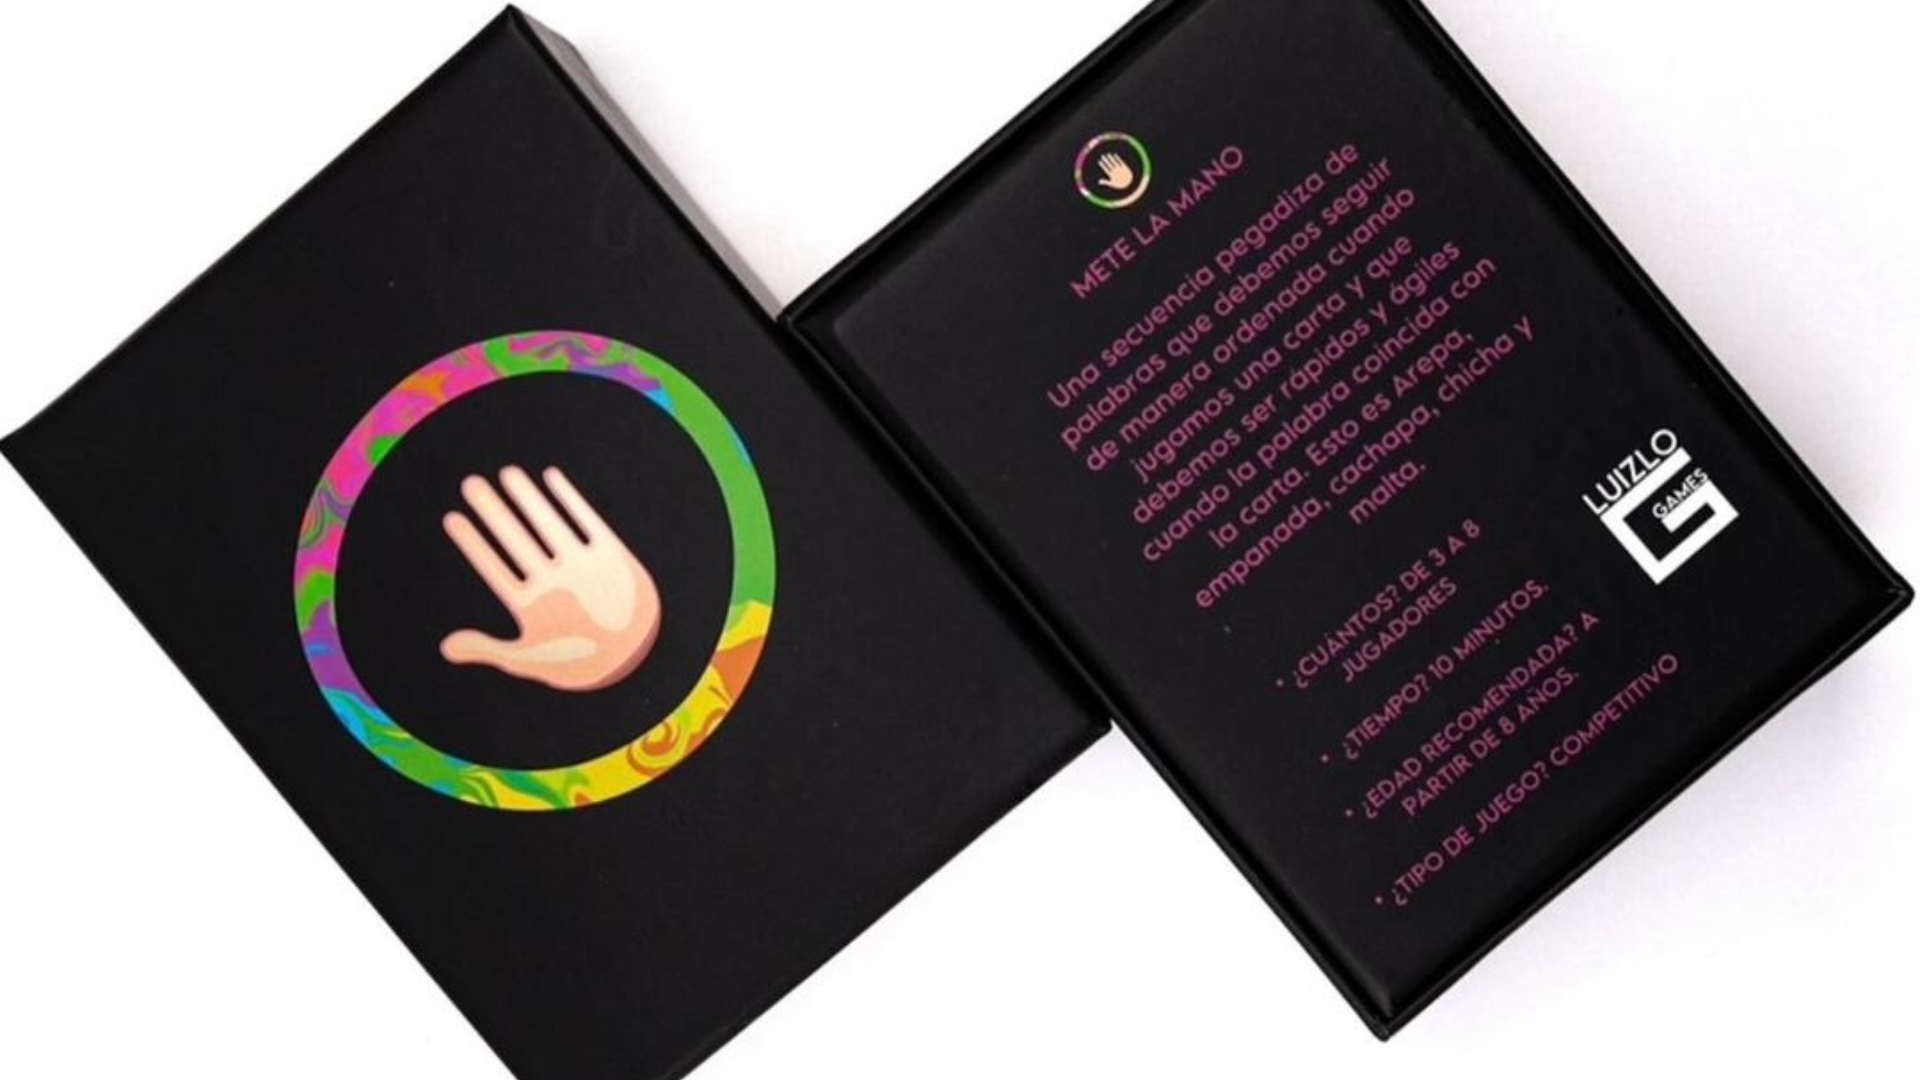 “Mete la mano”, nuevo juego de cartas inspirado en la cultura venezolana